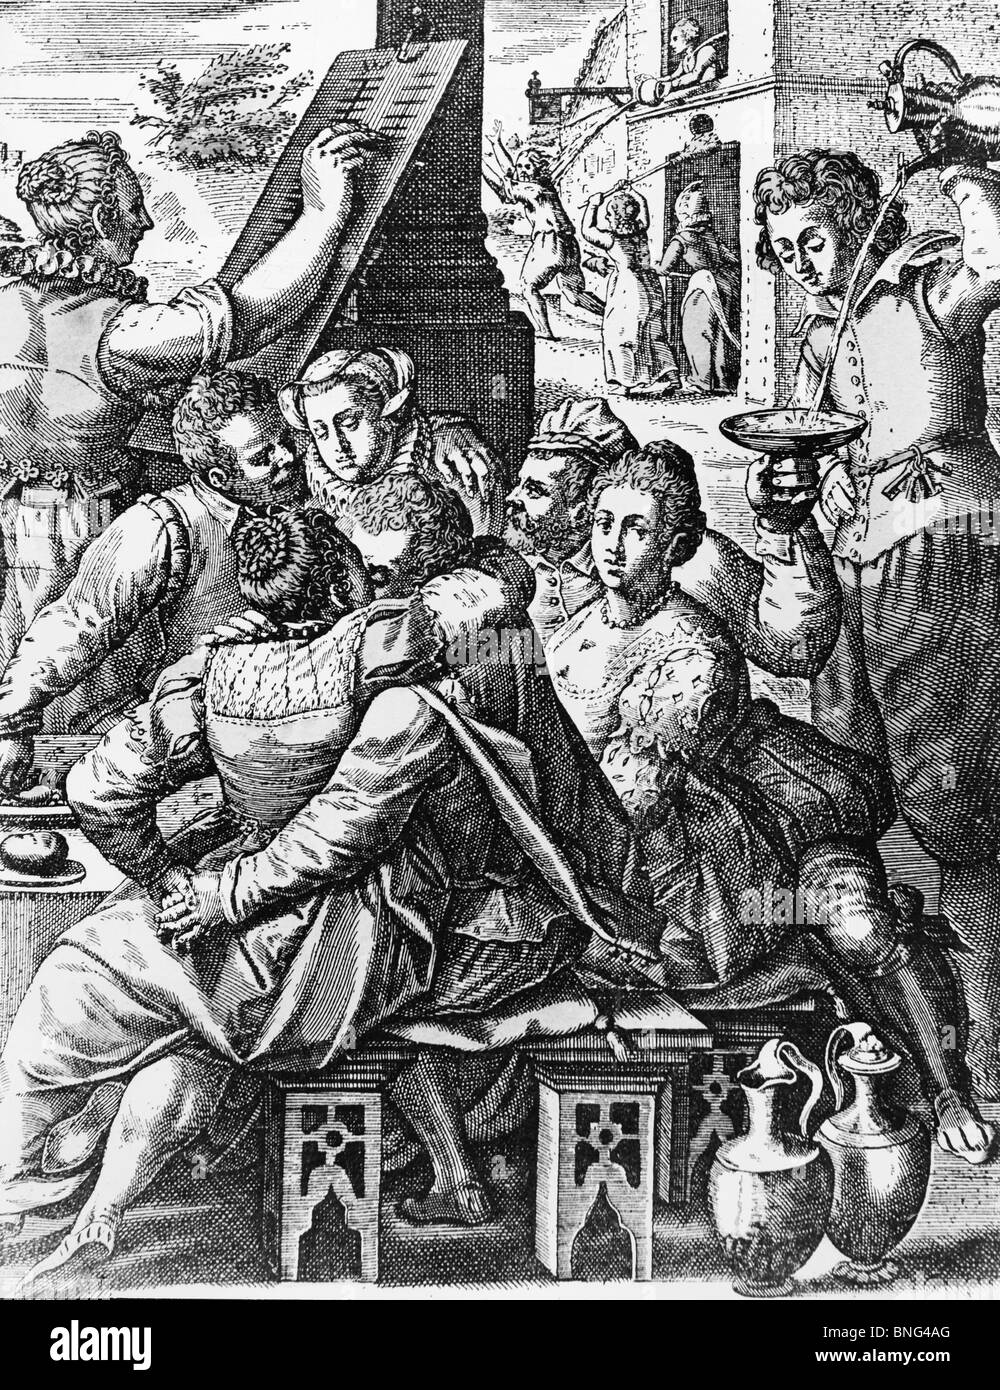 Das fröhliche Leben der Renaissance von Jan I Sadeler, Gravur, 1550-1600 Stockfoto